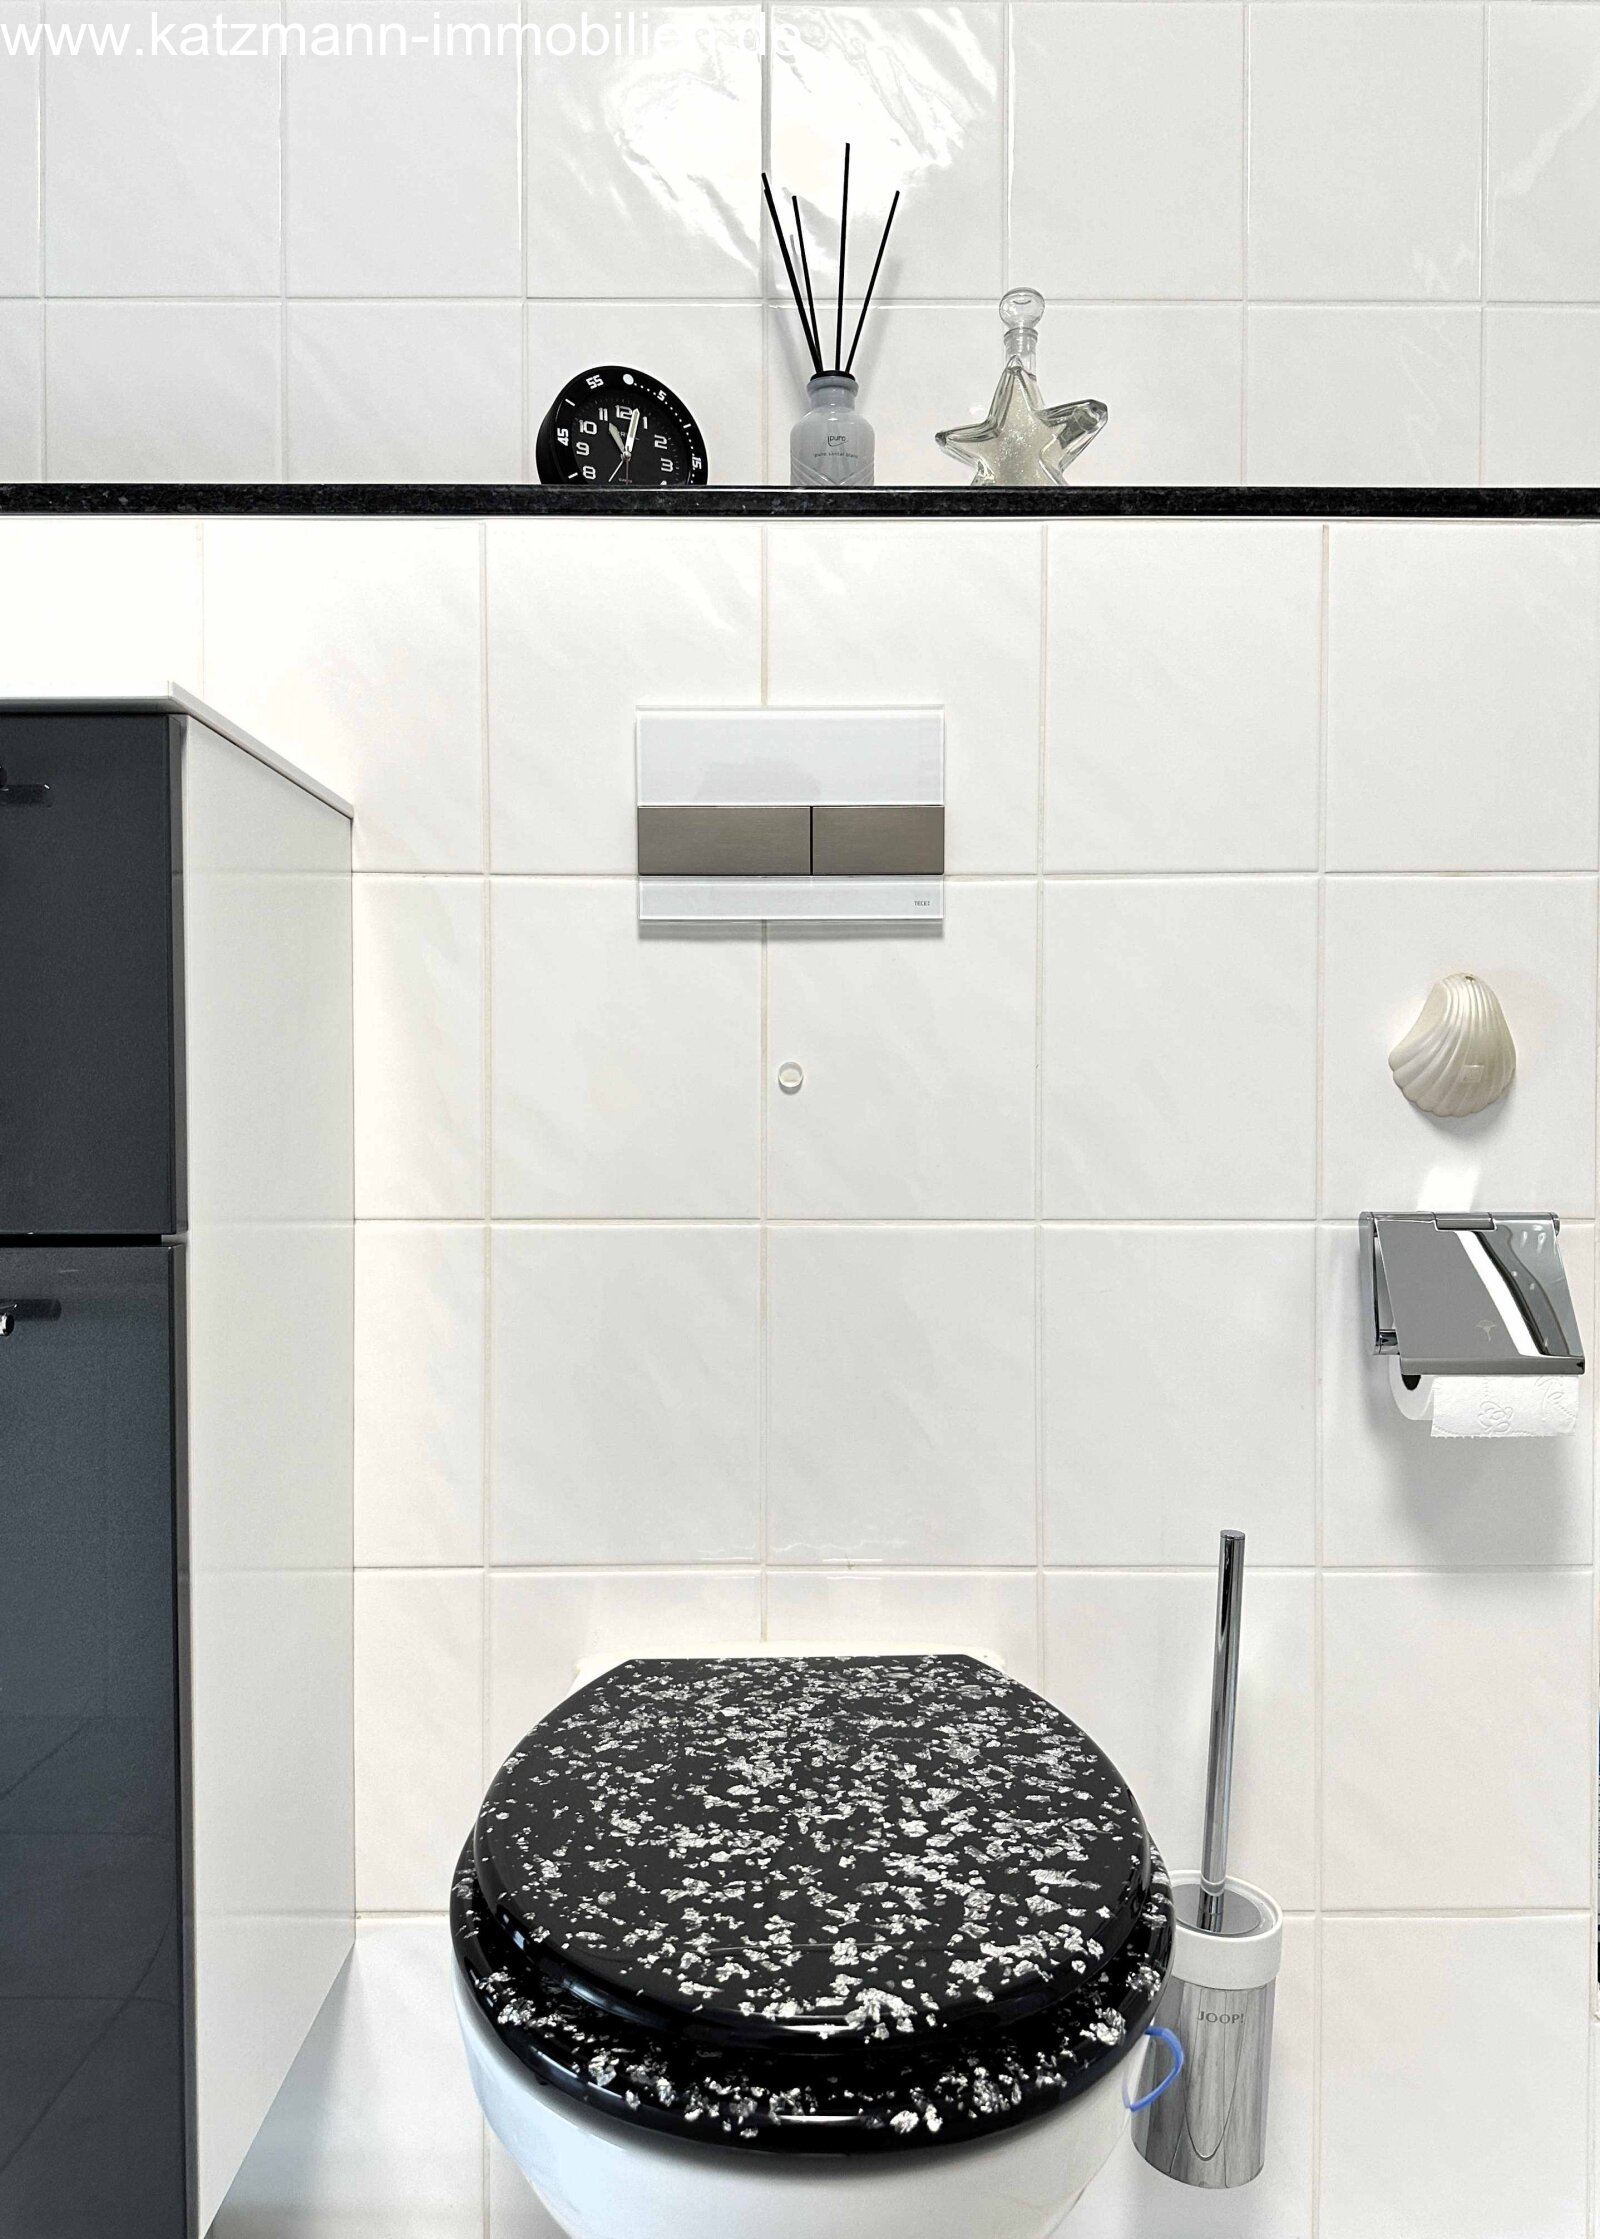 Hänge-WC mit moderner Drückerplatte